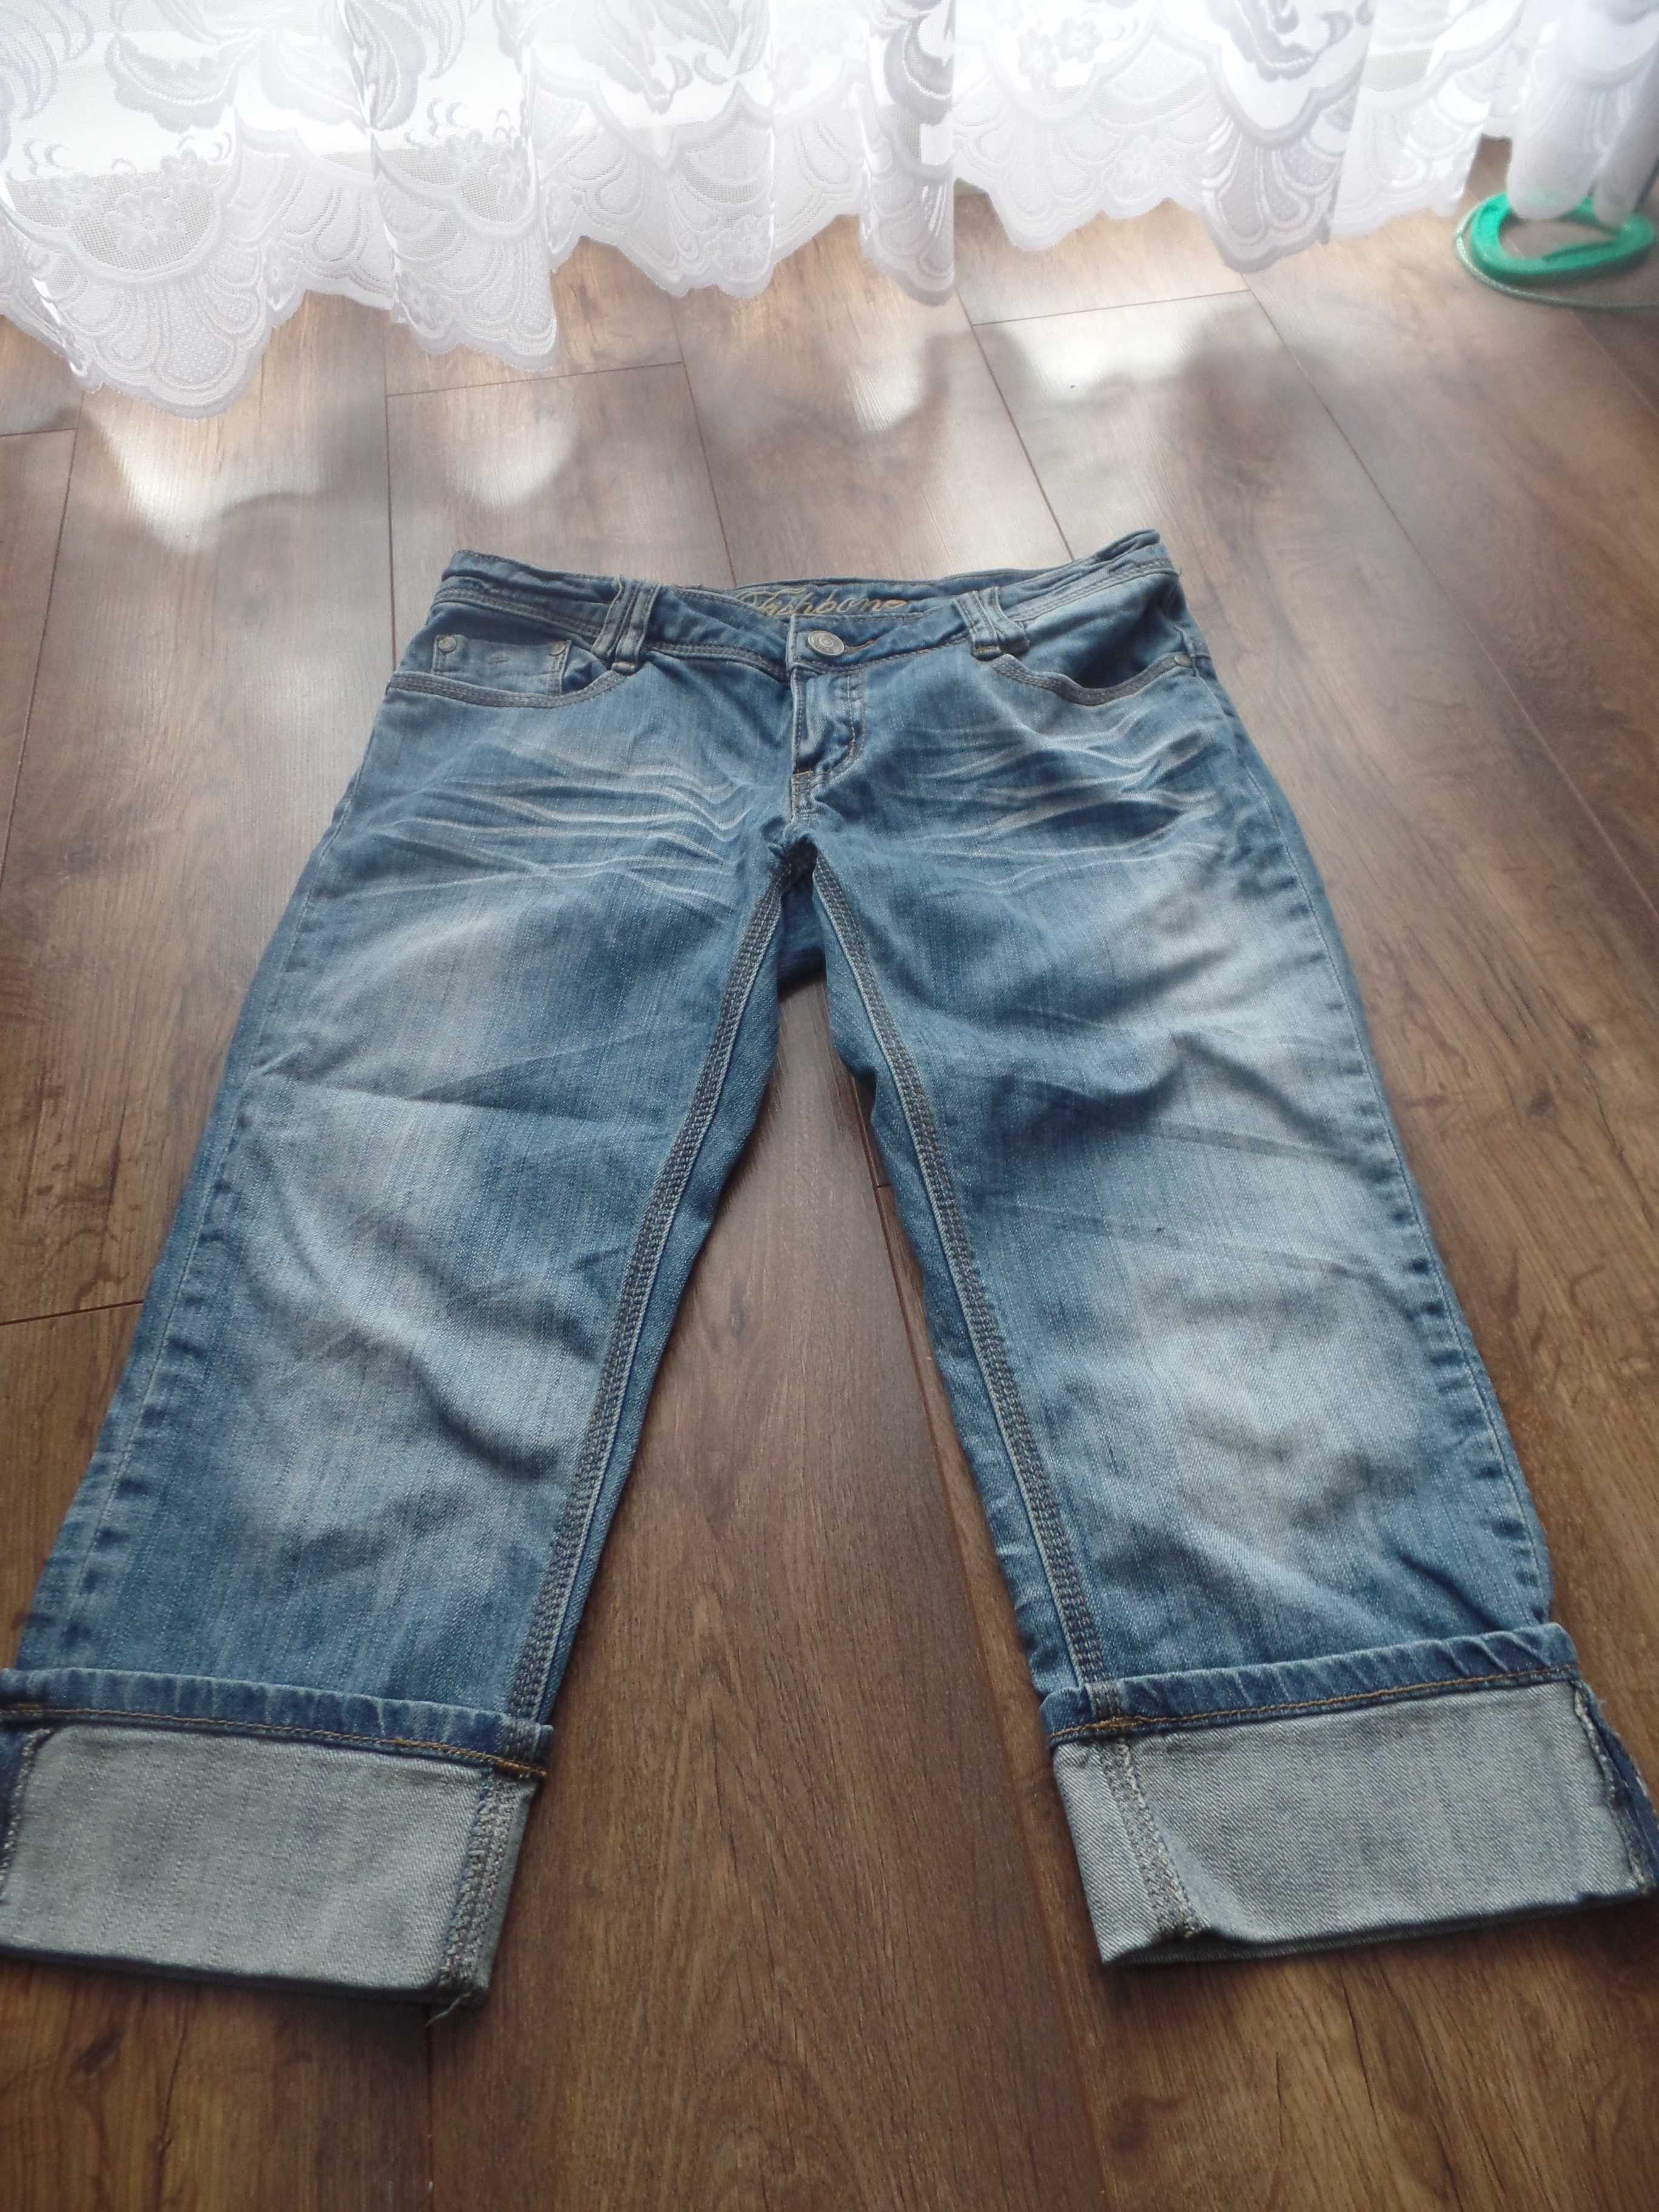 Krótkie dżinsowe spodenki spodnie jeansy dżinsy rybaczki R. L